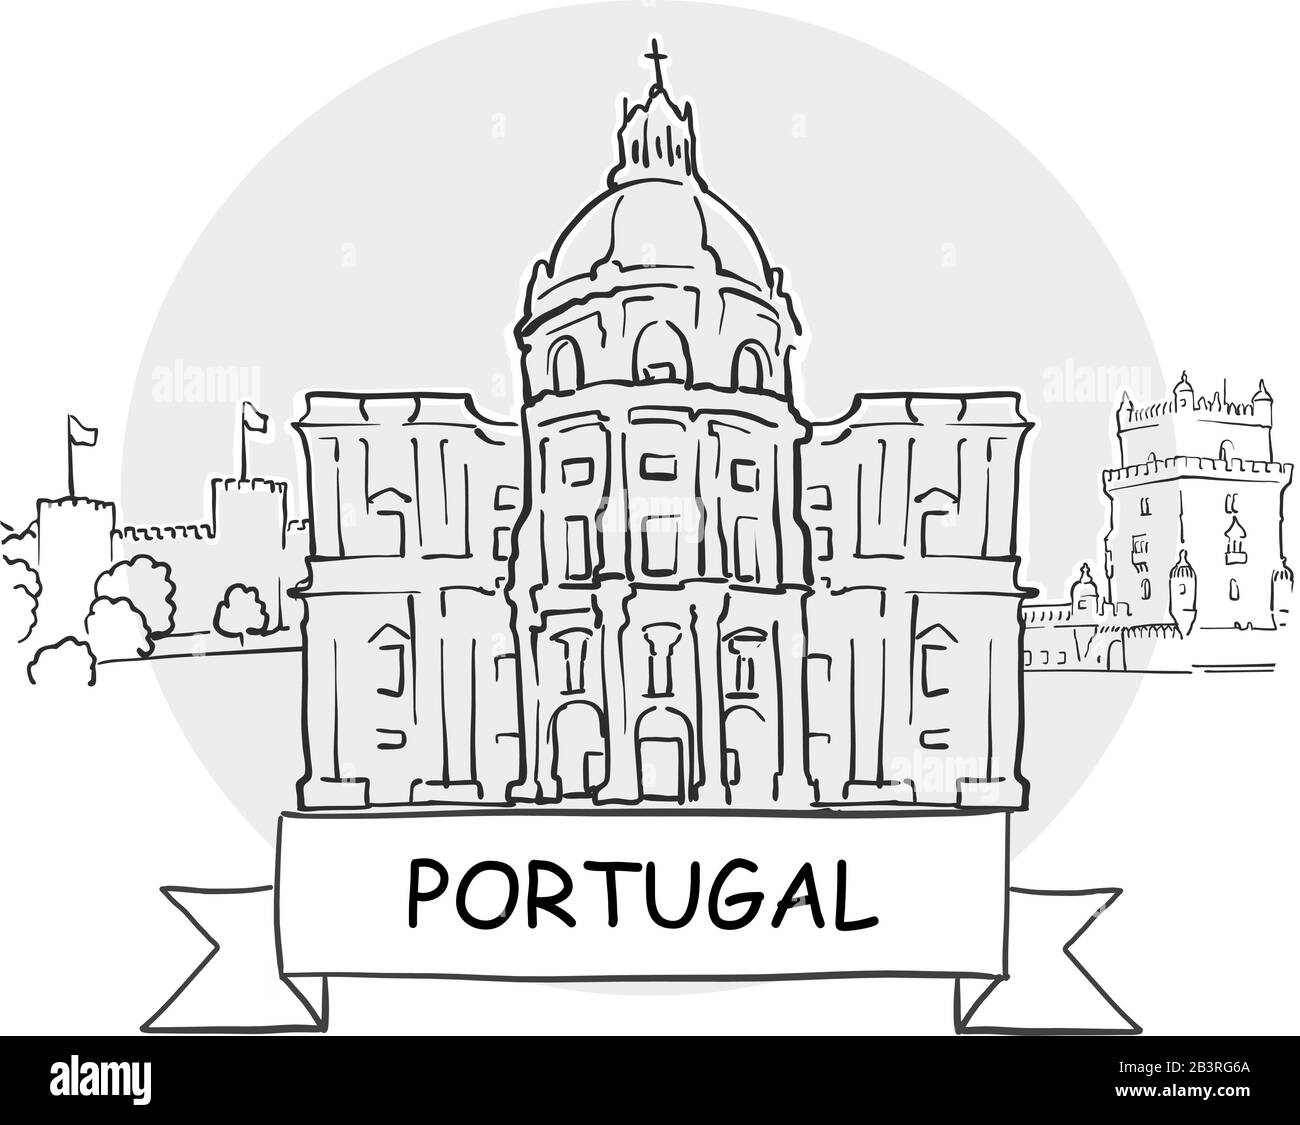 Portugal Señal De Vector Urbano Dibujado A Mano. Ilustración De Línea Negra Con Cinta Y Título. Ilustración del Vector